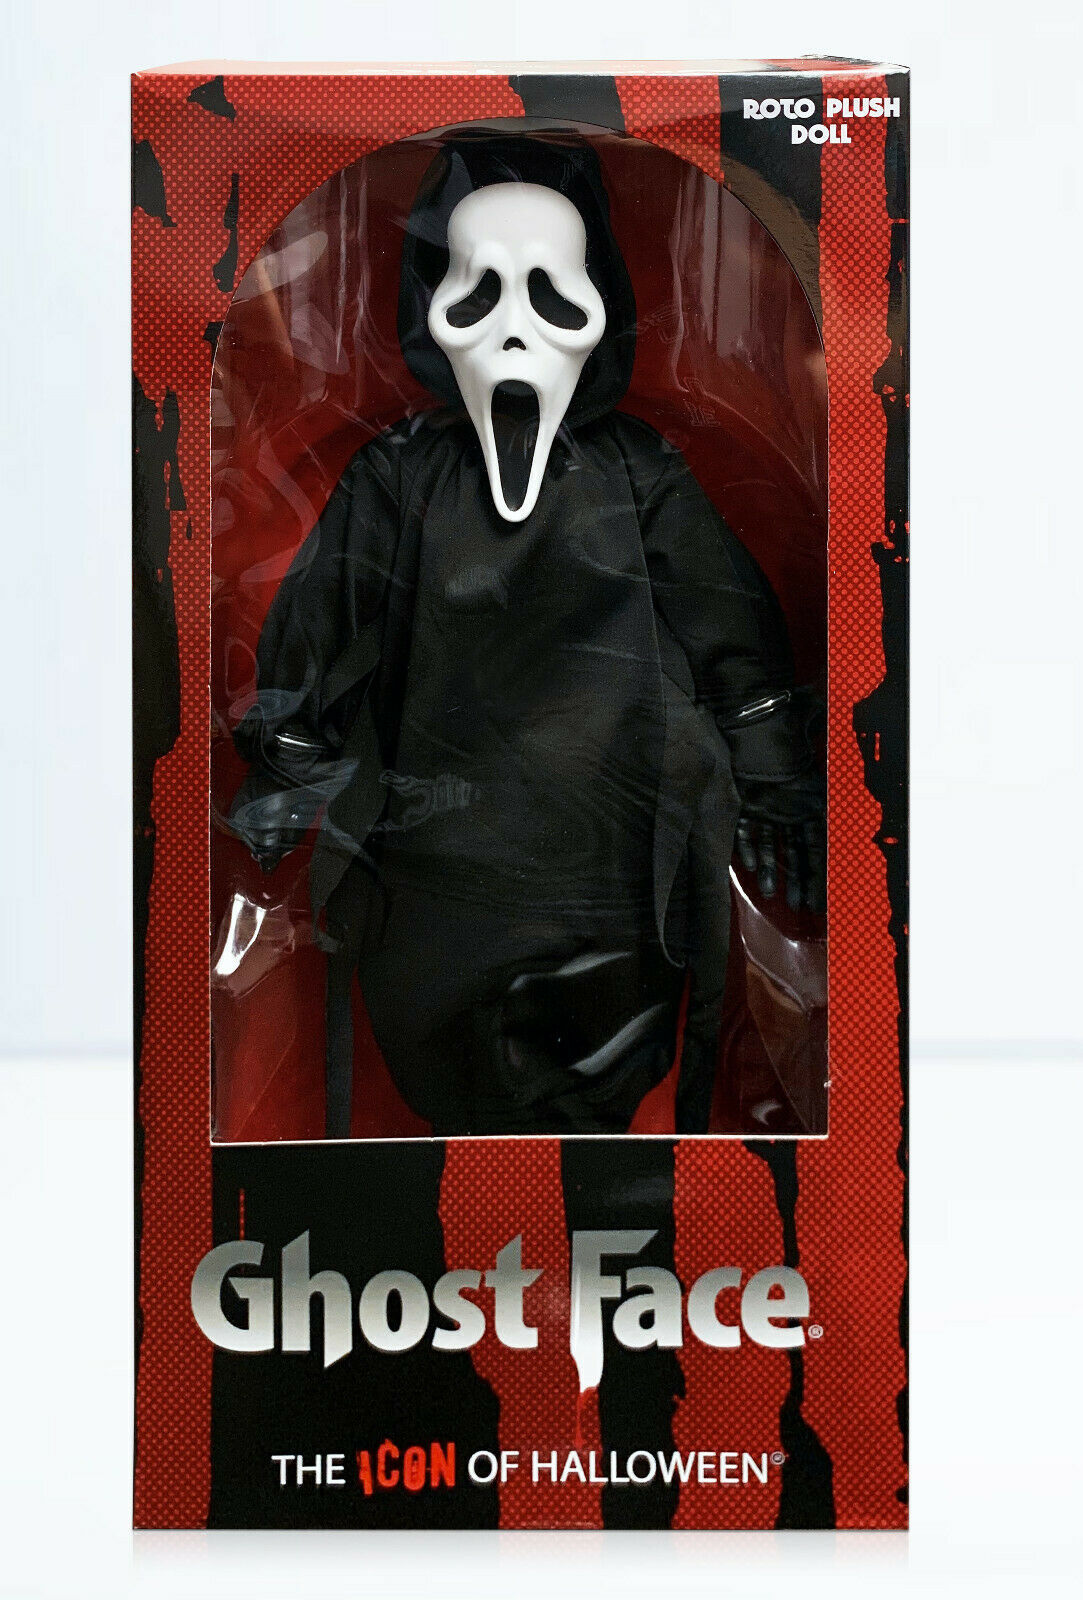 Ghostface Plush from Scream 